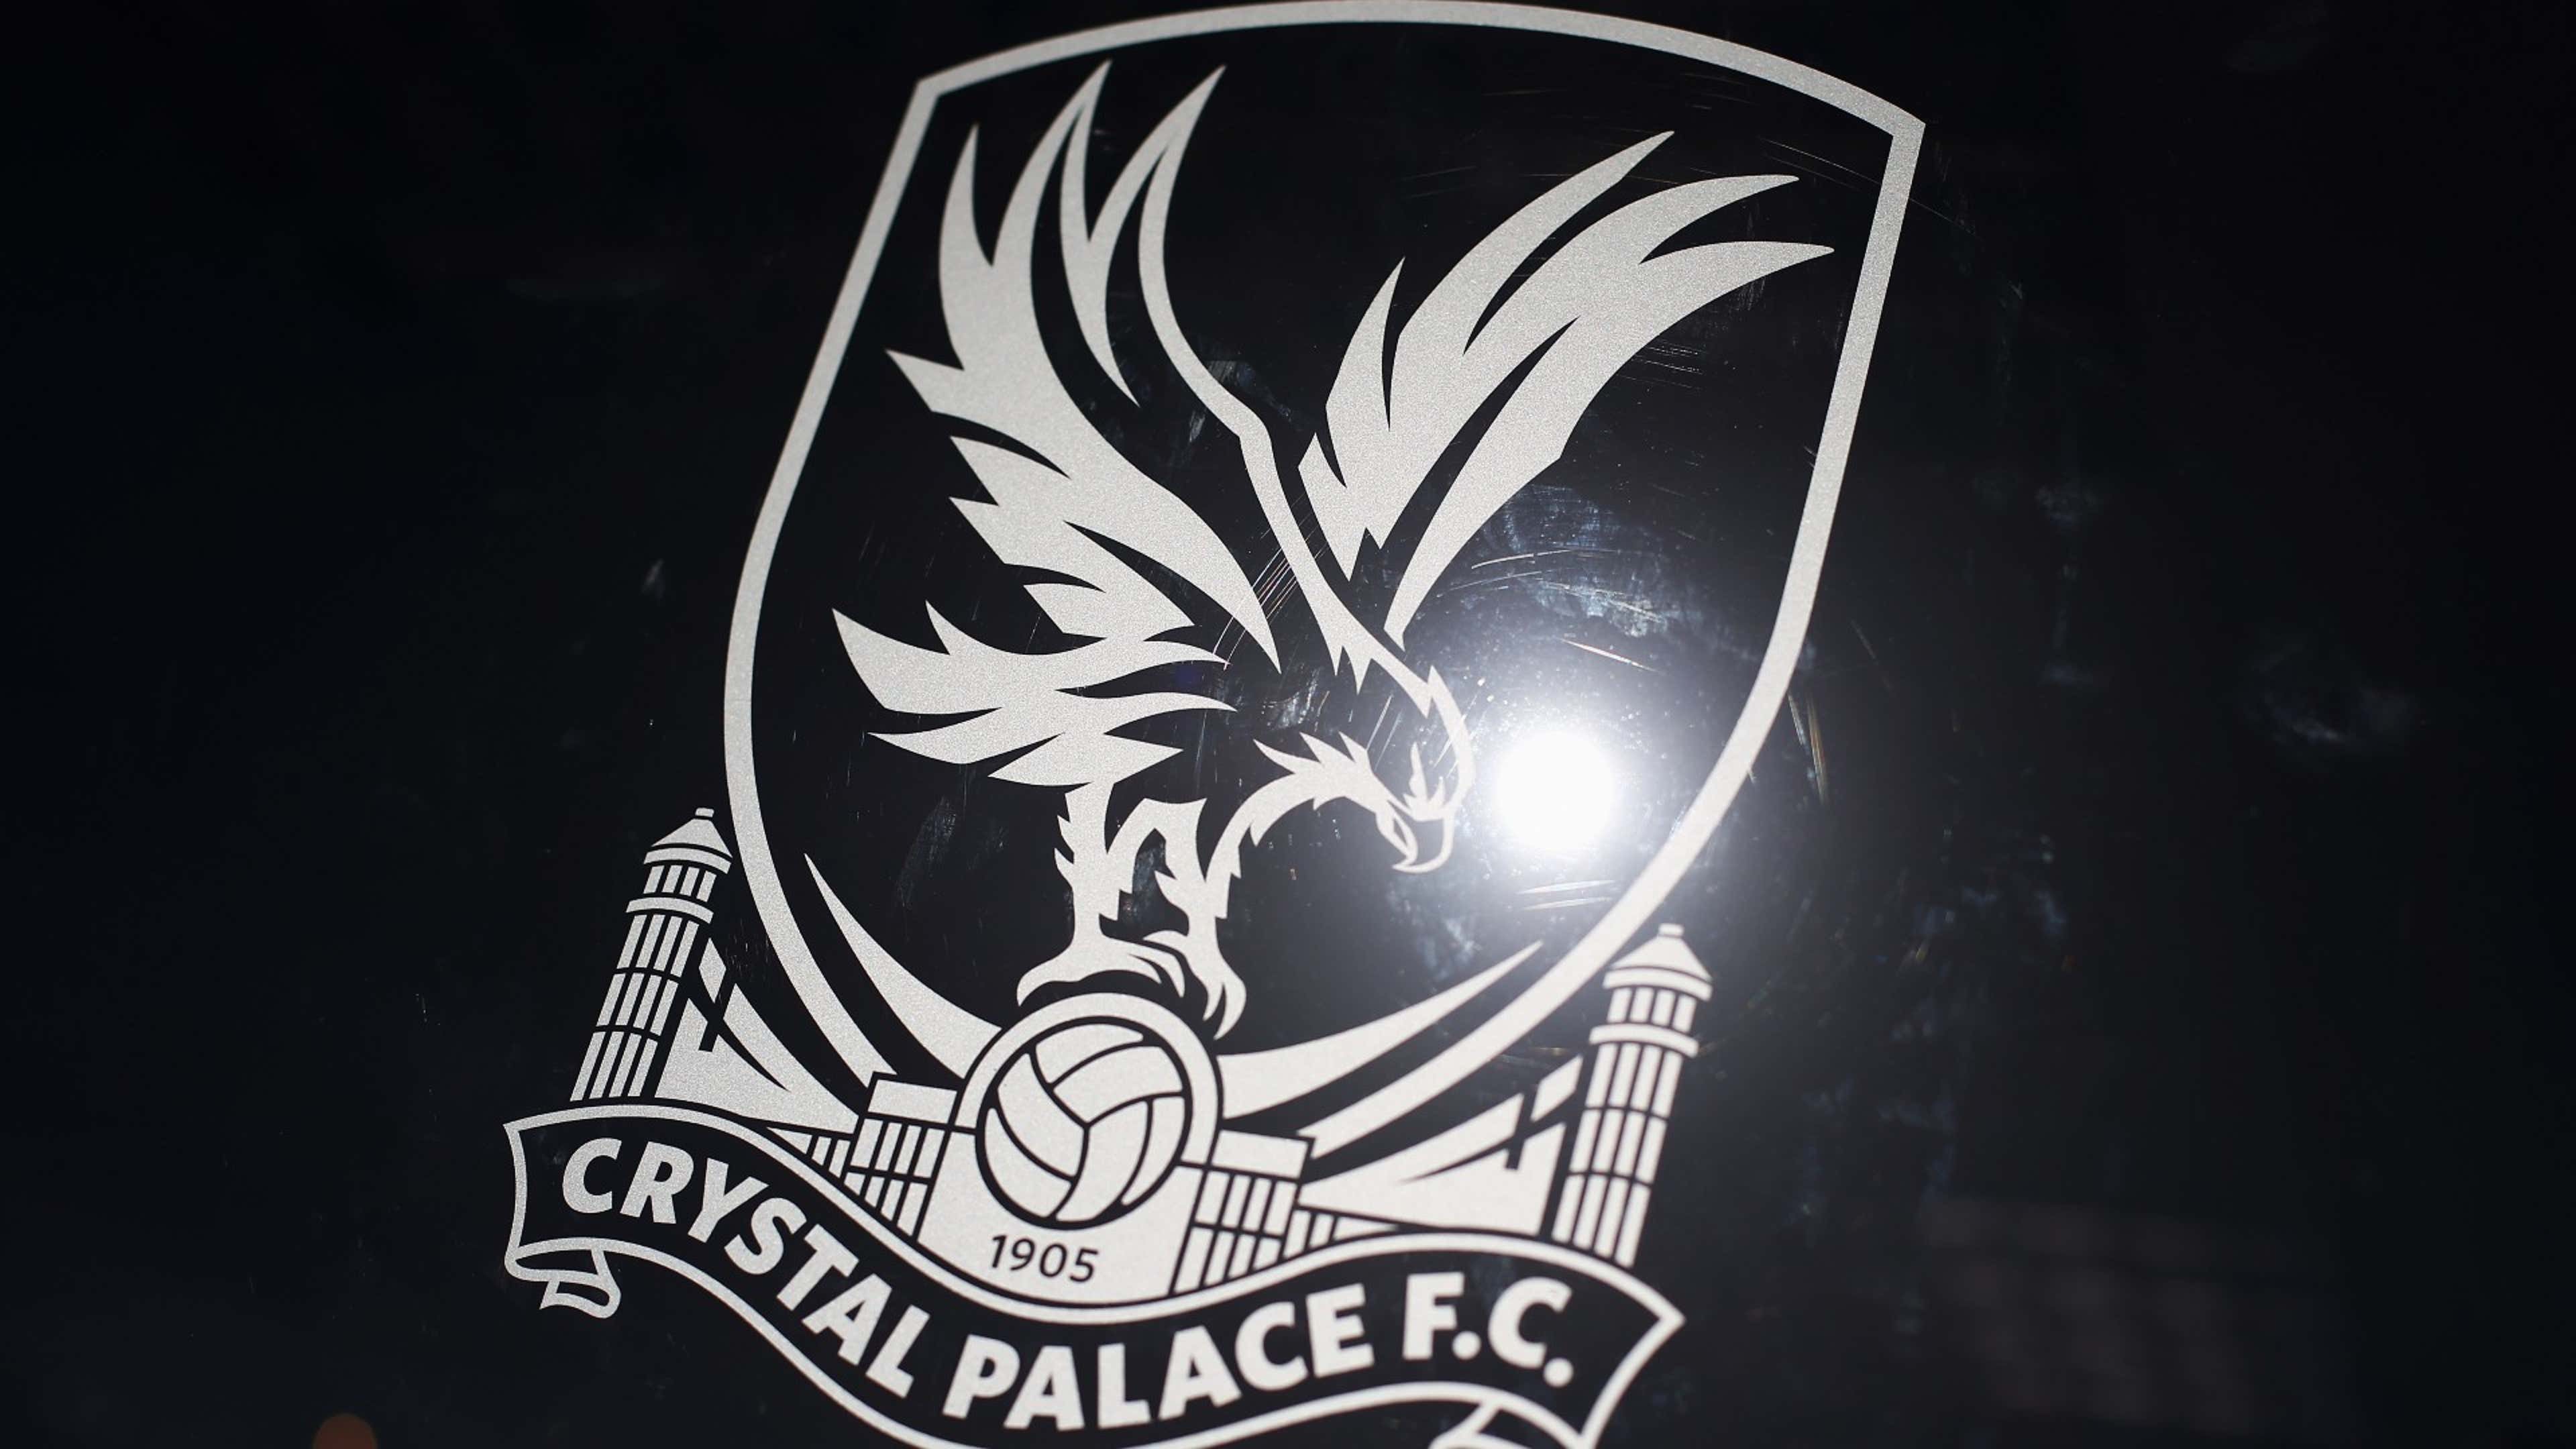 Crystal Palace calaamada crest aragtida guud